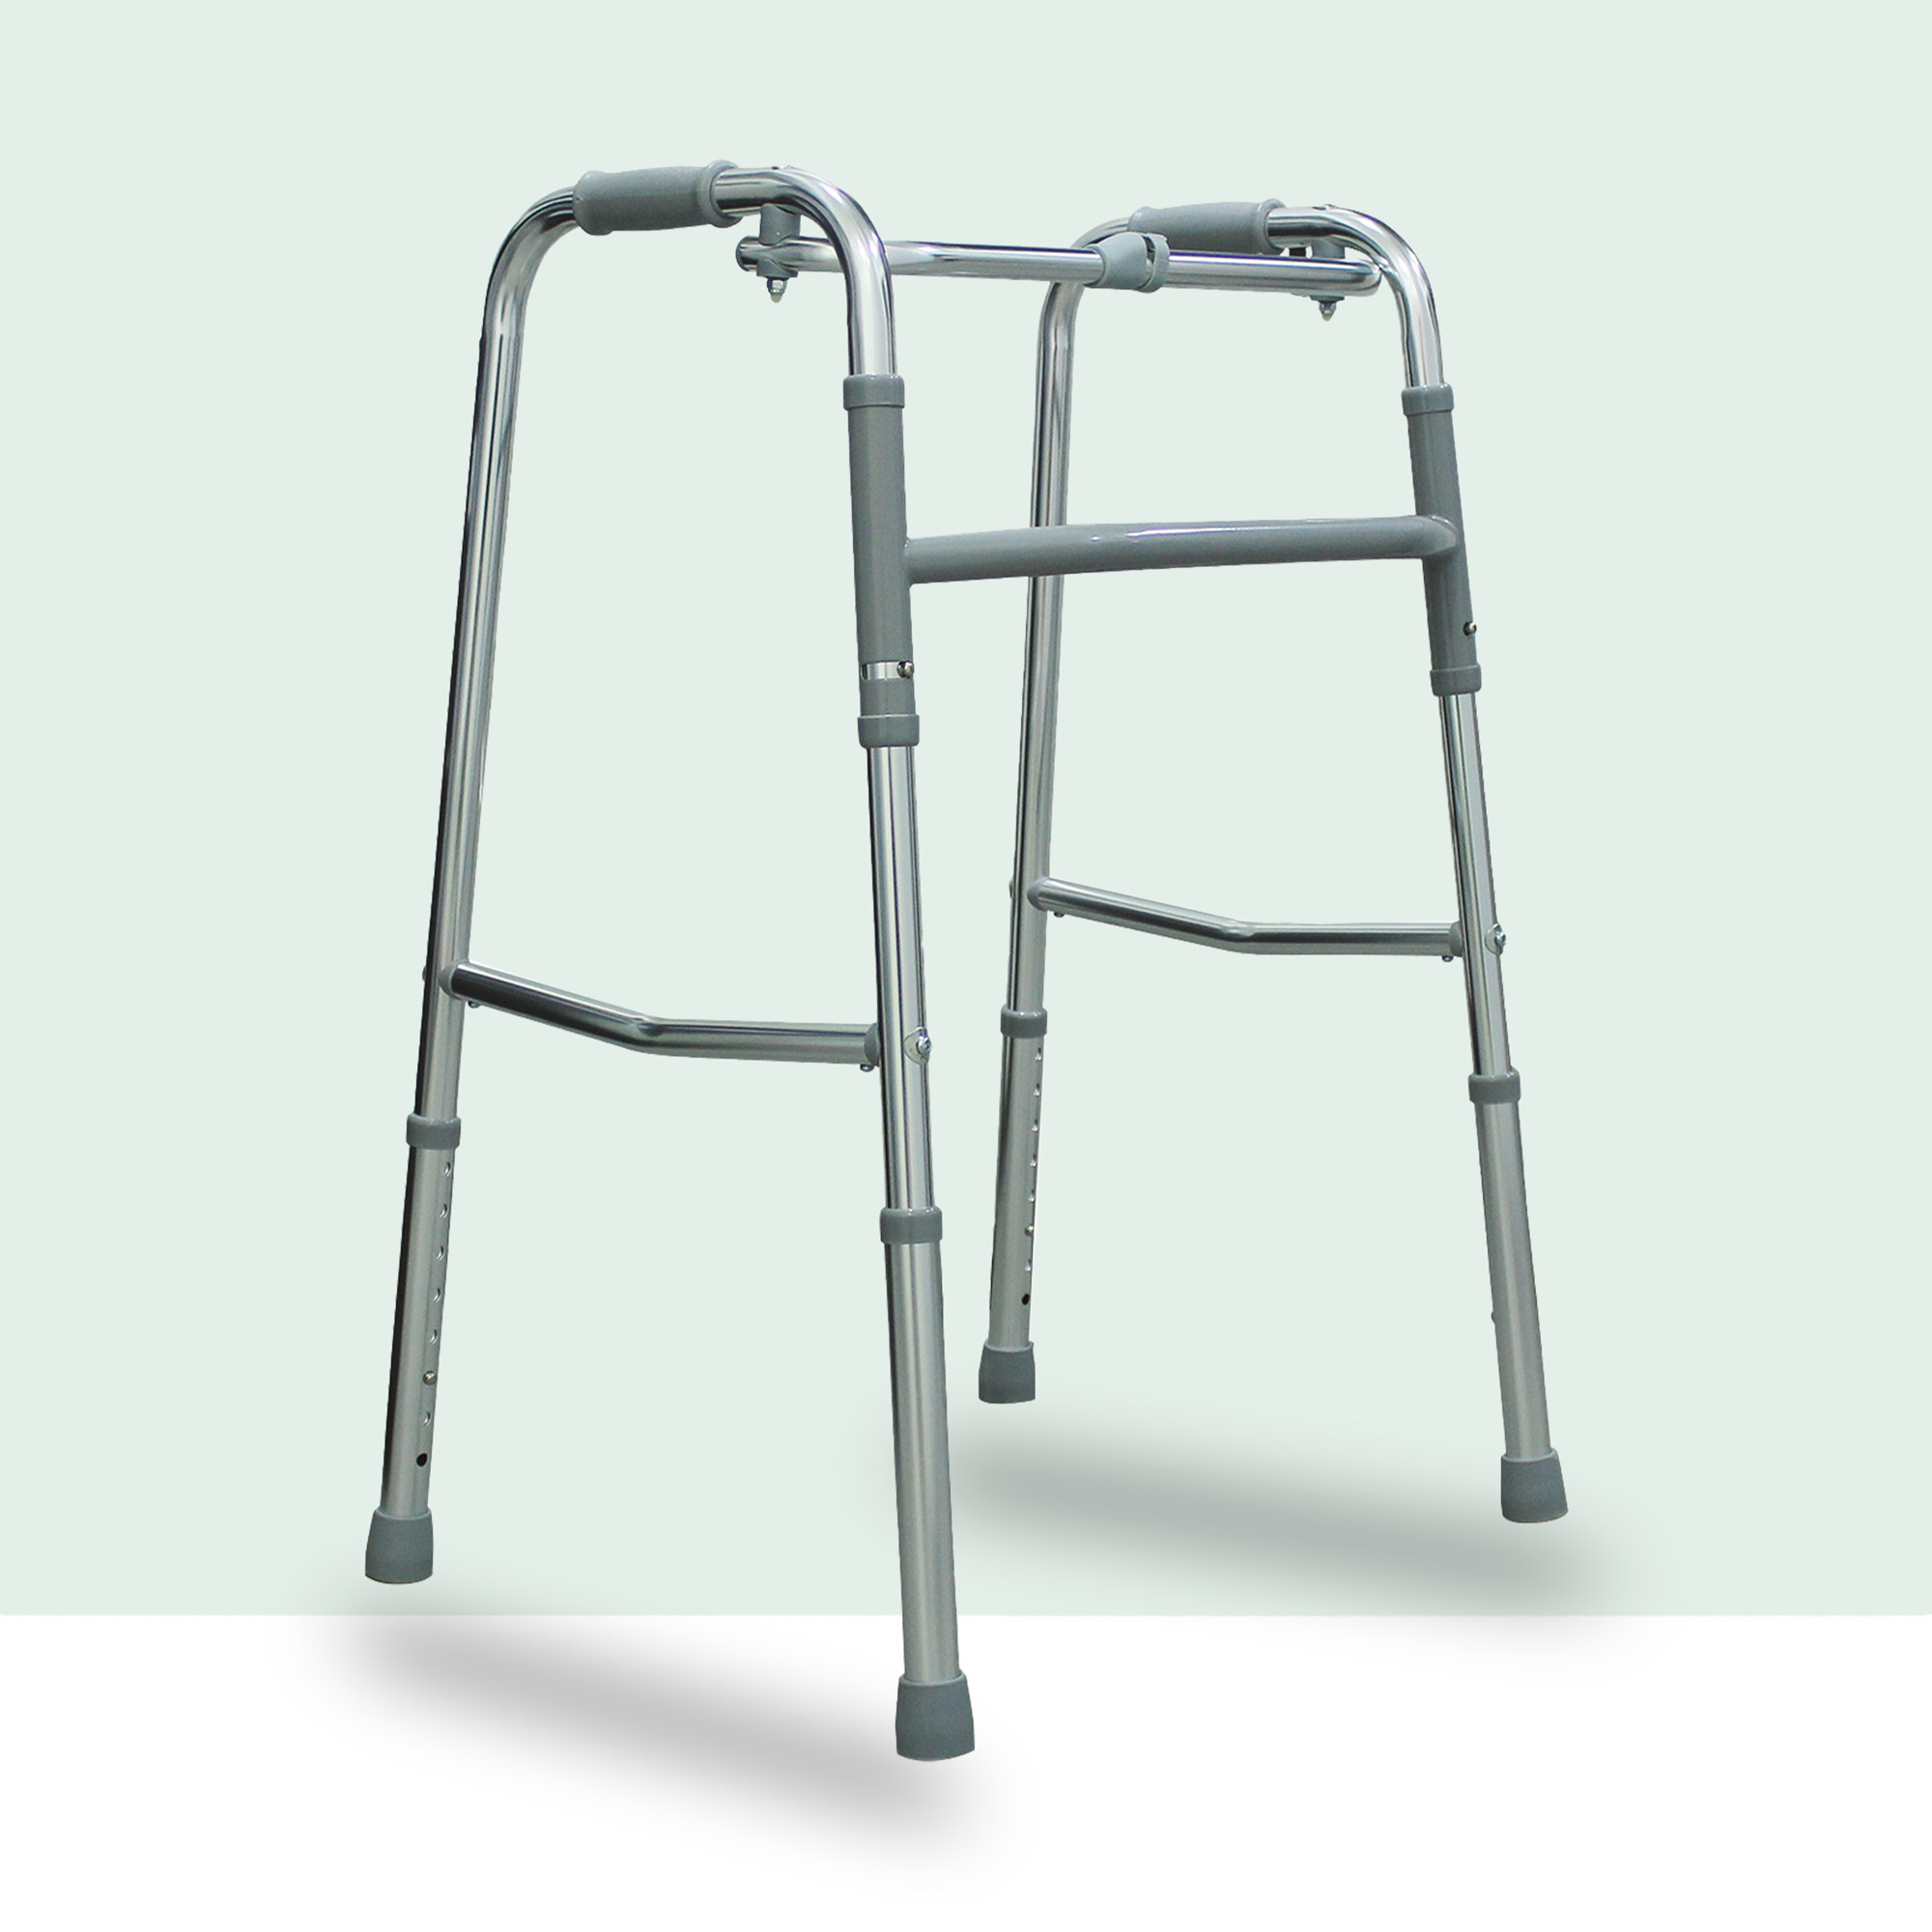 Prodotti e ausili per disabili e anziani deambulatori carrozzine Verona